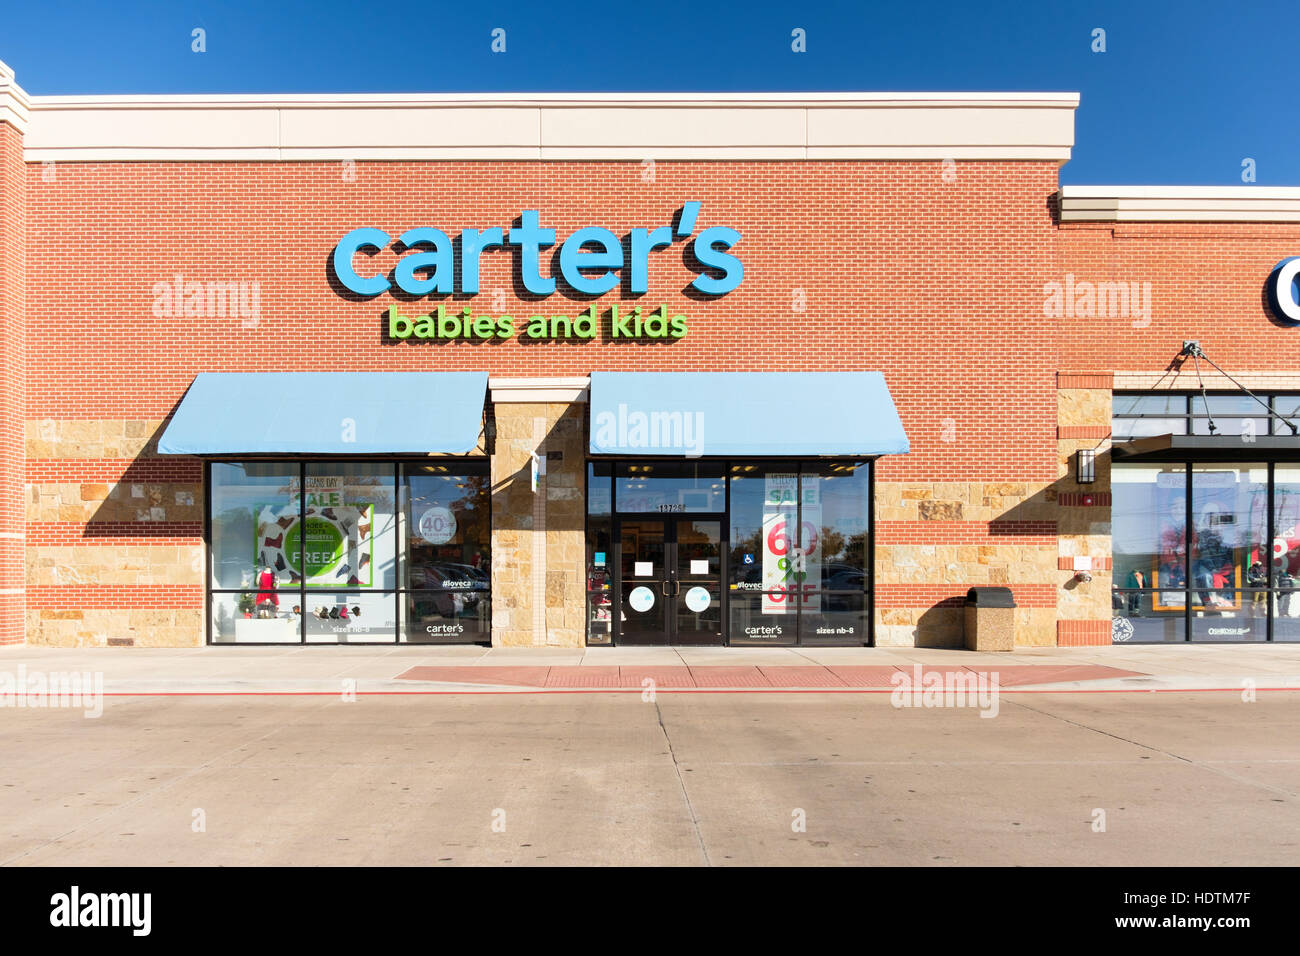 Vitrine extérieure et l'entrée du carter's Bébés et enfants magasin de vêtements à Oklahoma City, Oklahoma, USA. Banque D'Images